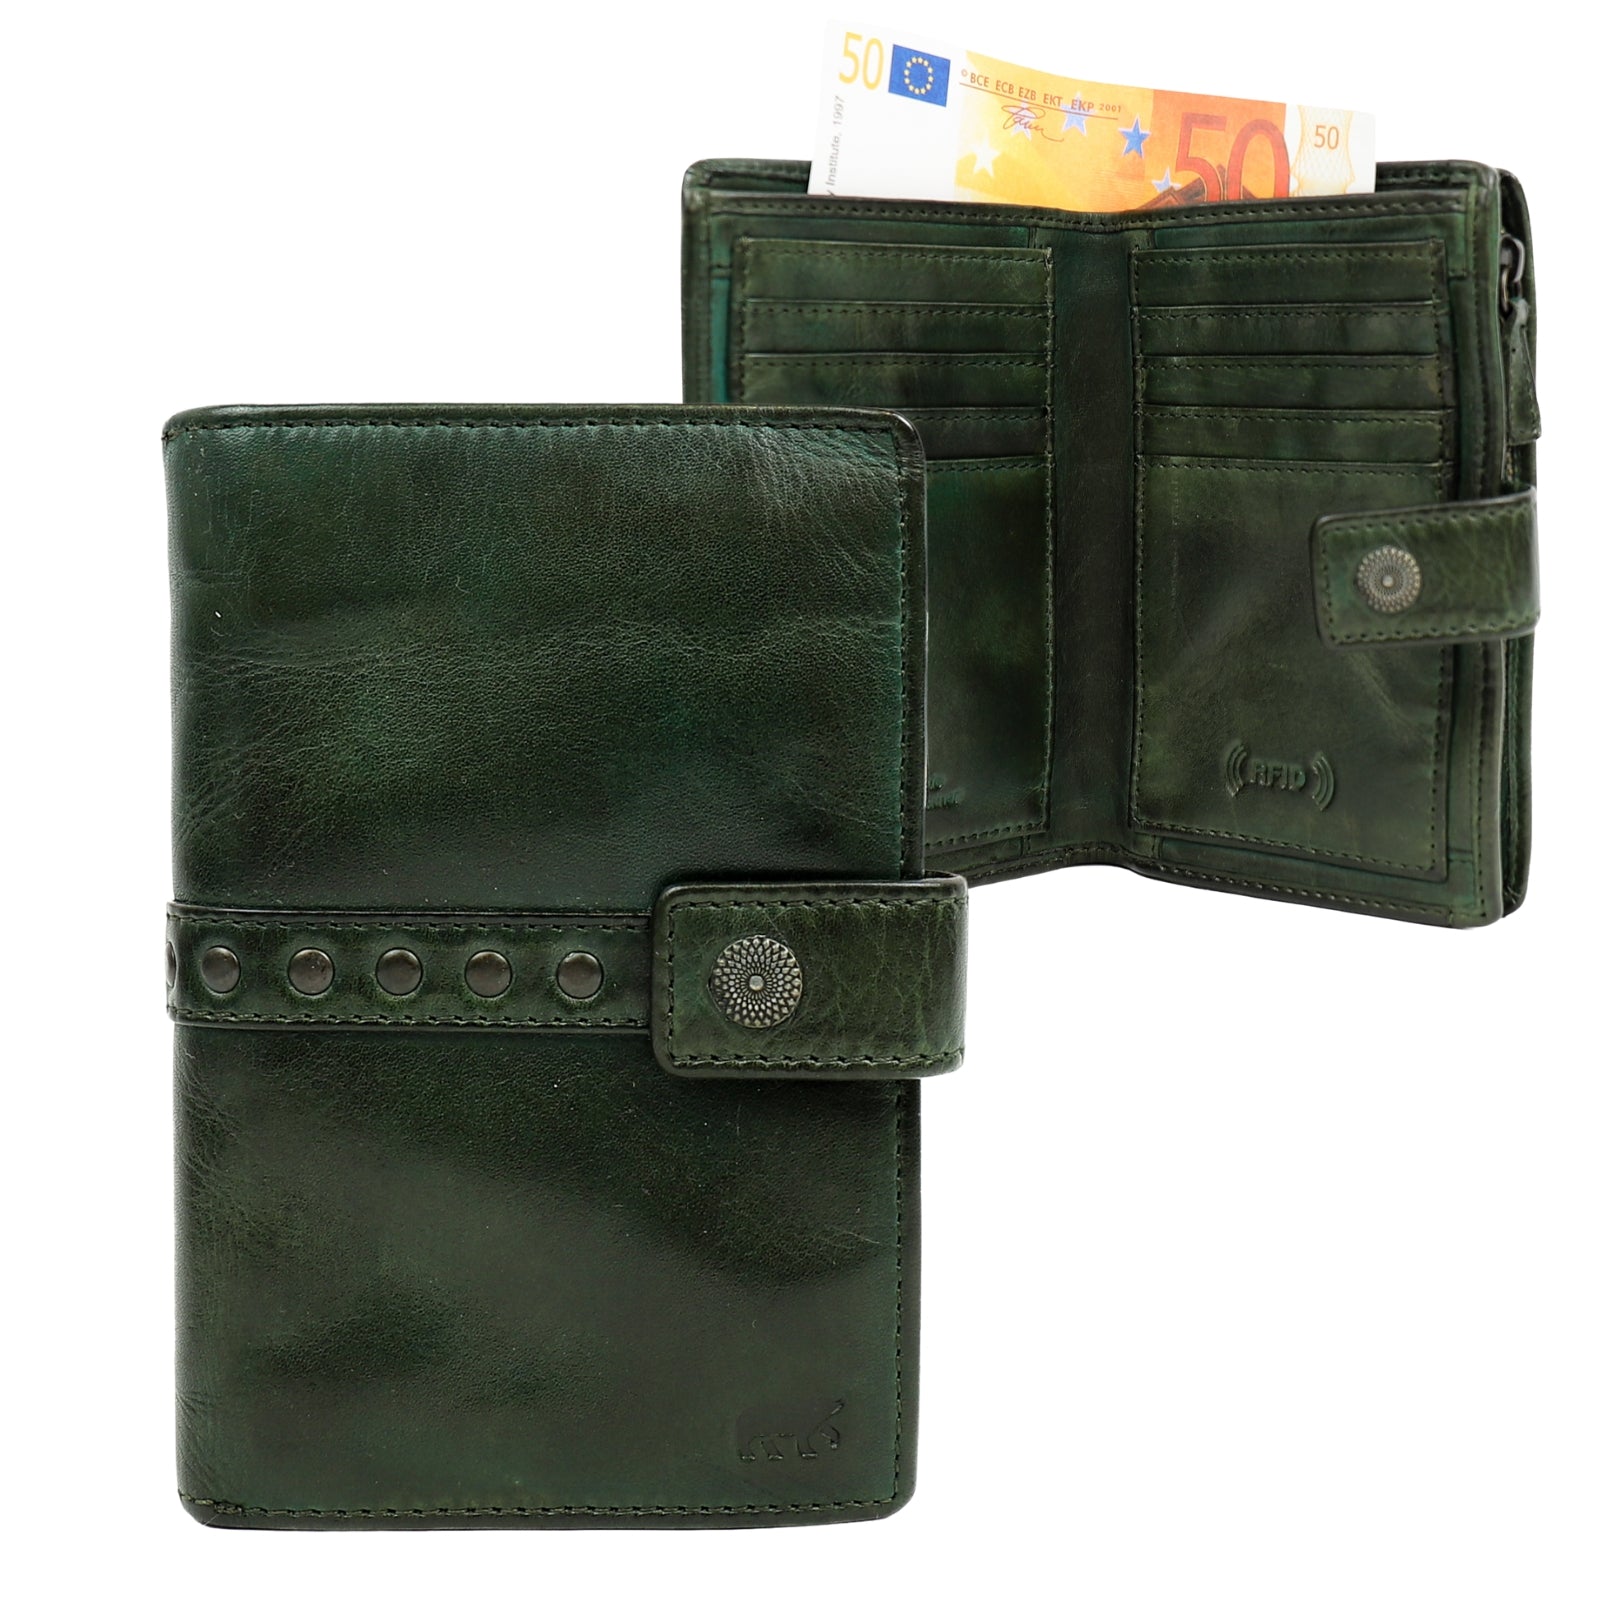 Wallet 'Sanne' green studs - CL 15087